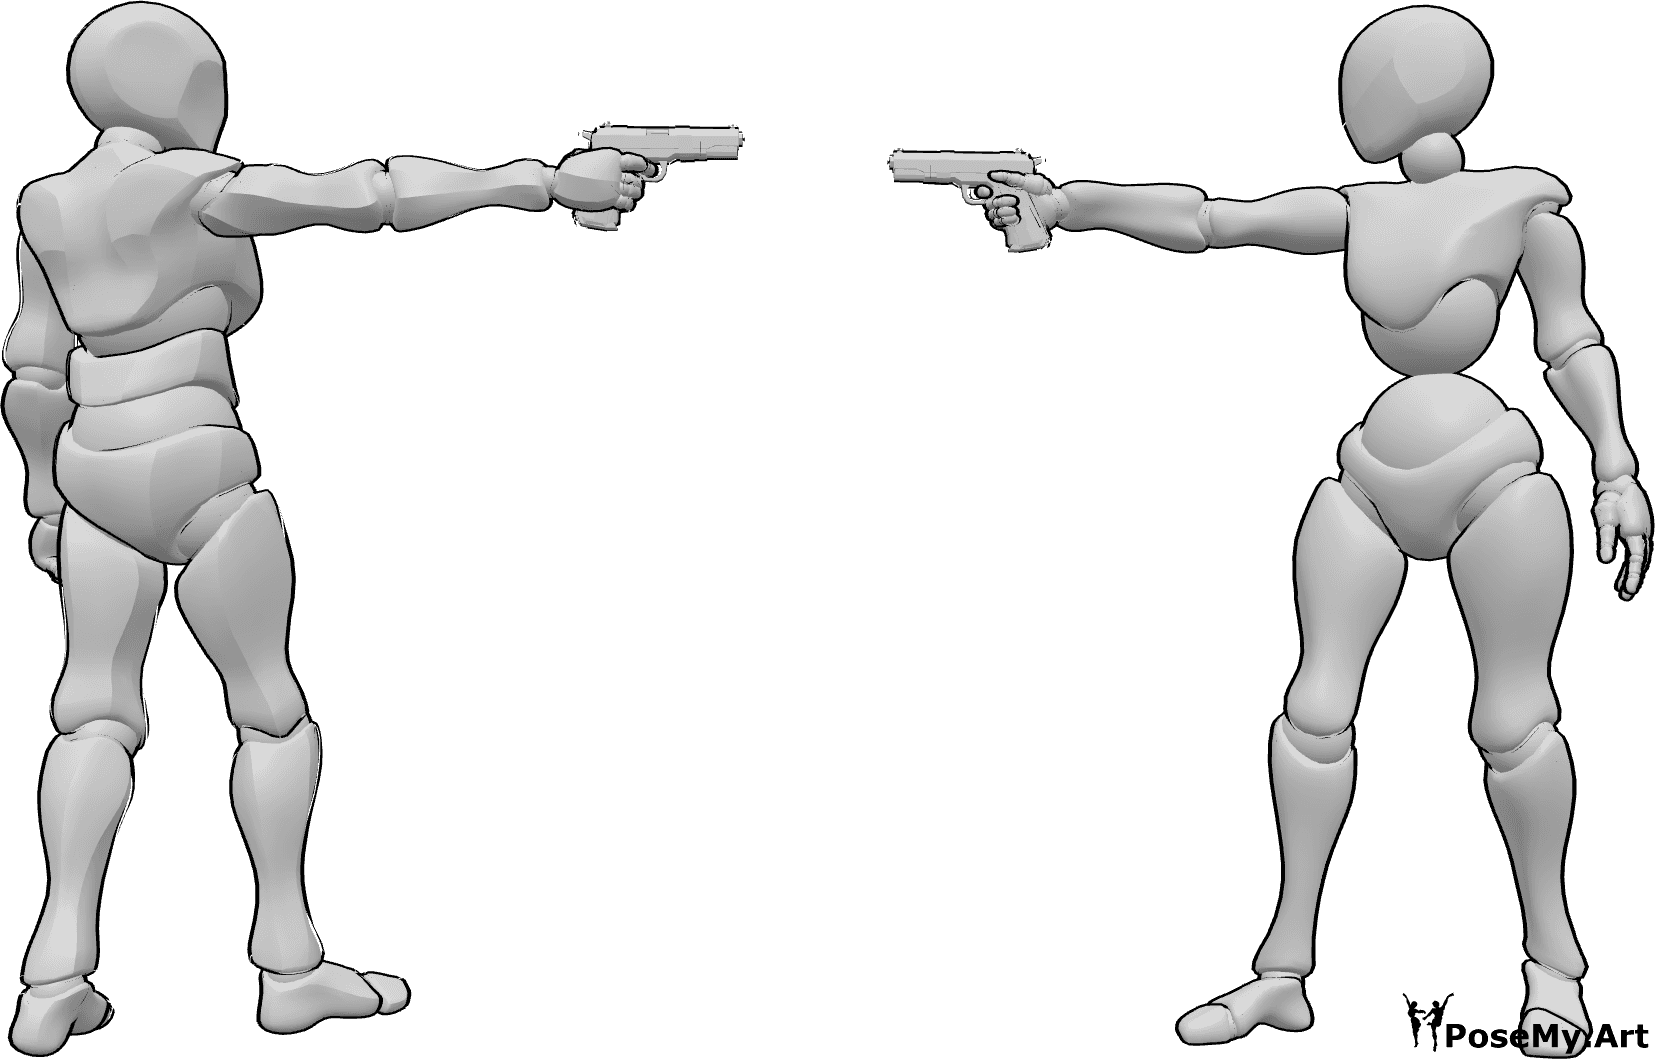 Référence des poses- Pose de visée au pistolet - Une femme et un homme se tiennent debout et pointent leurs pistolets l'un vers l'autre.